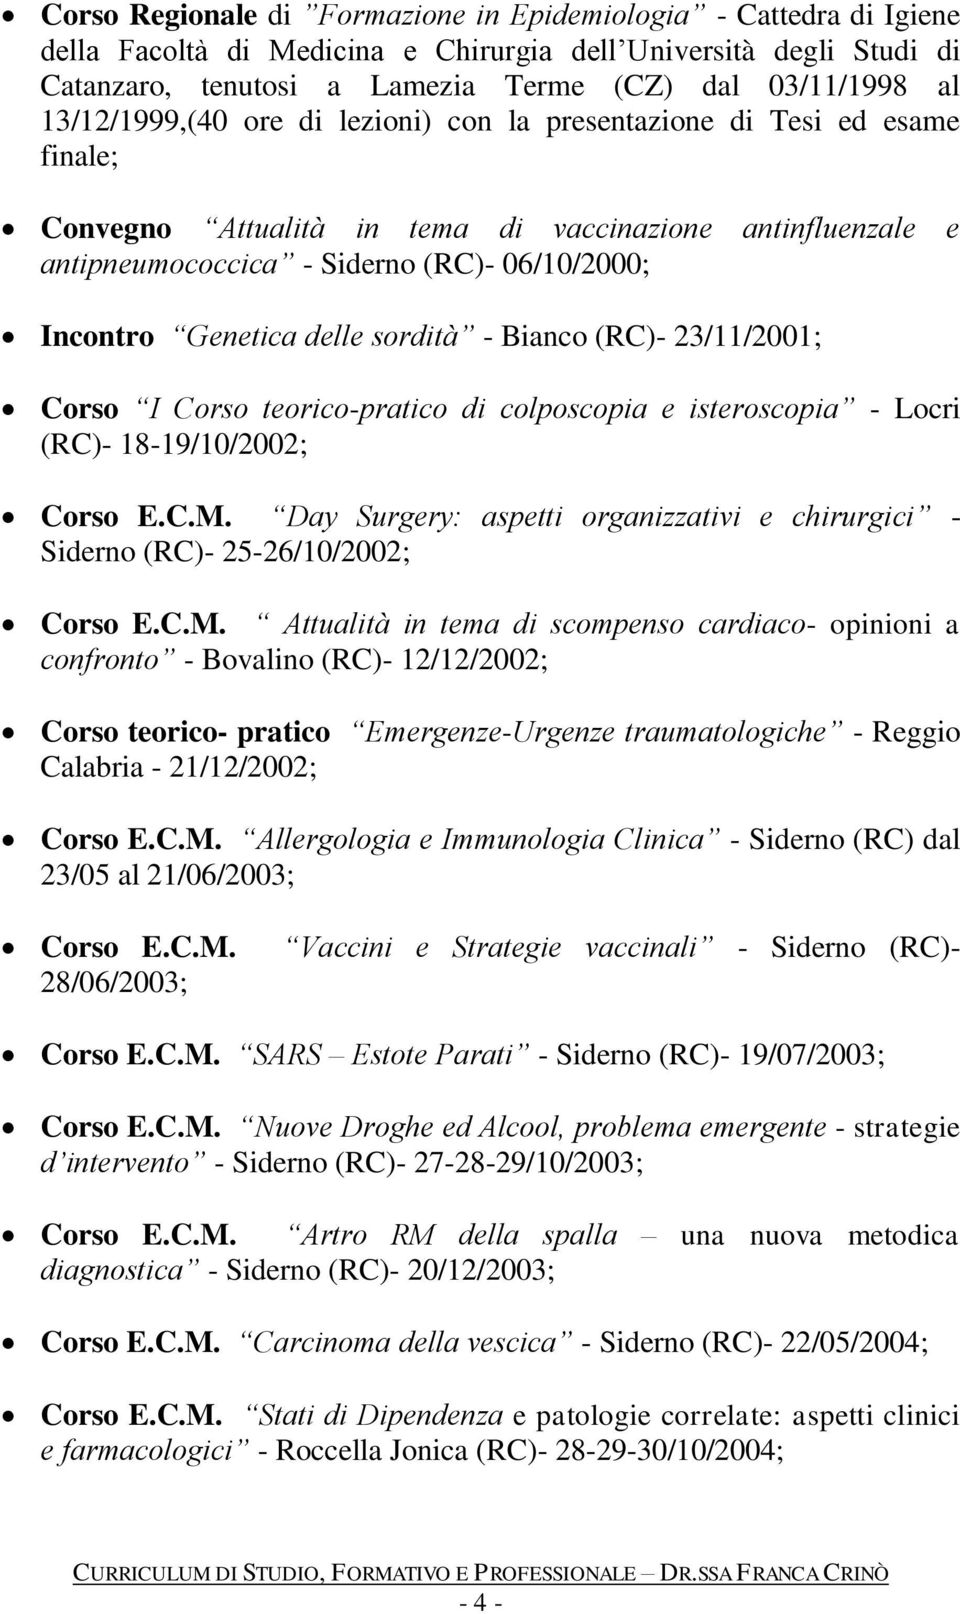 Genetica delle sordità - Bianco (RC)- 23/11/2001; Corso I Corso teorico-pratico di colposcopia e isteroscopia - Locri (RC)- 18-19/10/2002; Corso E.C.M.